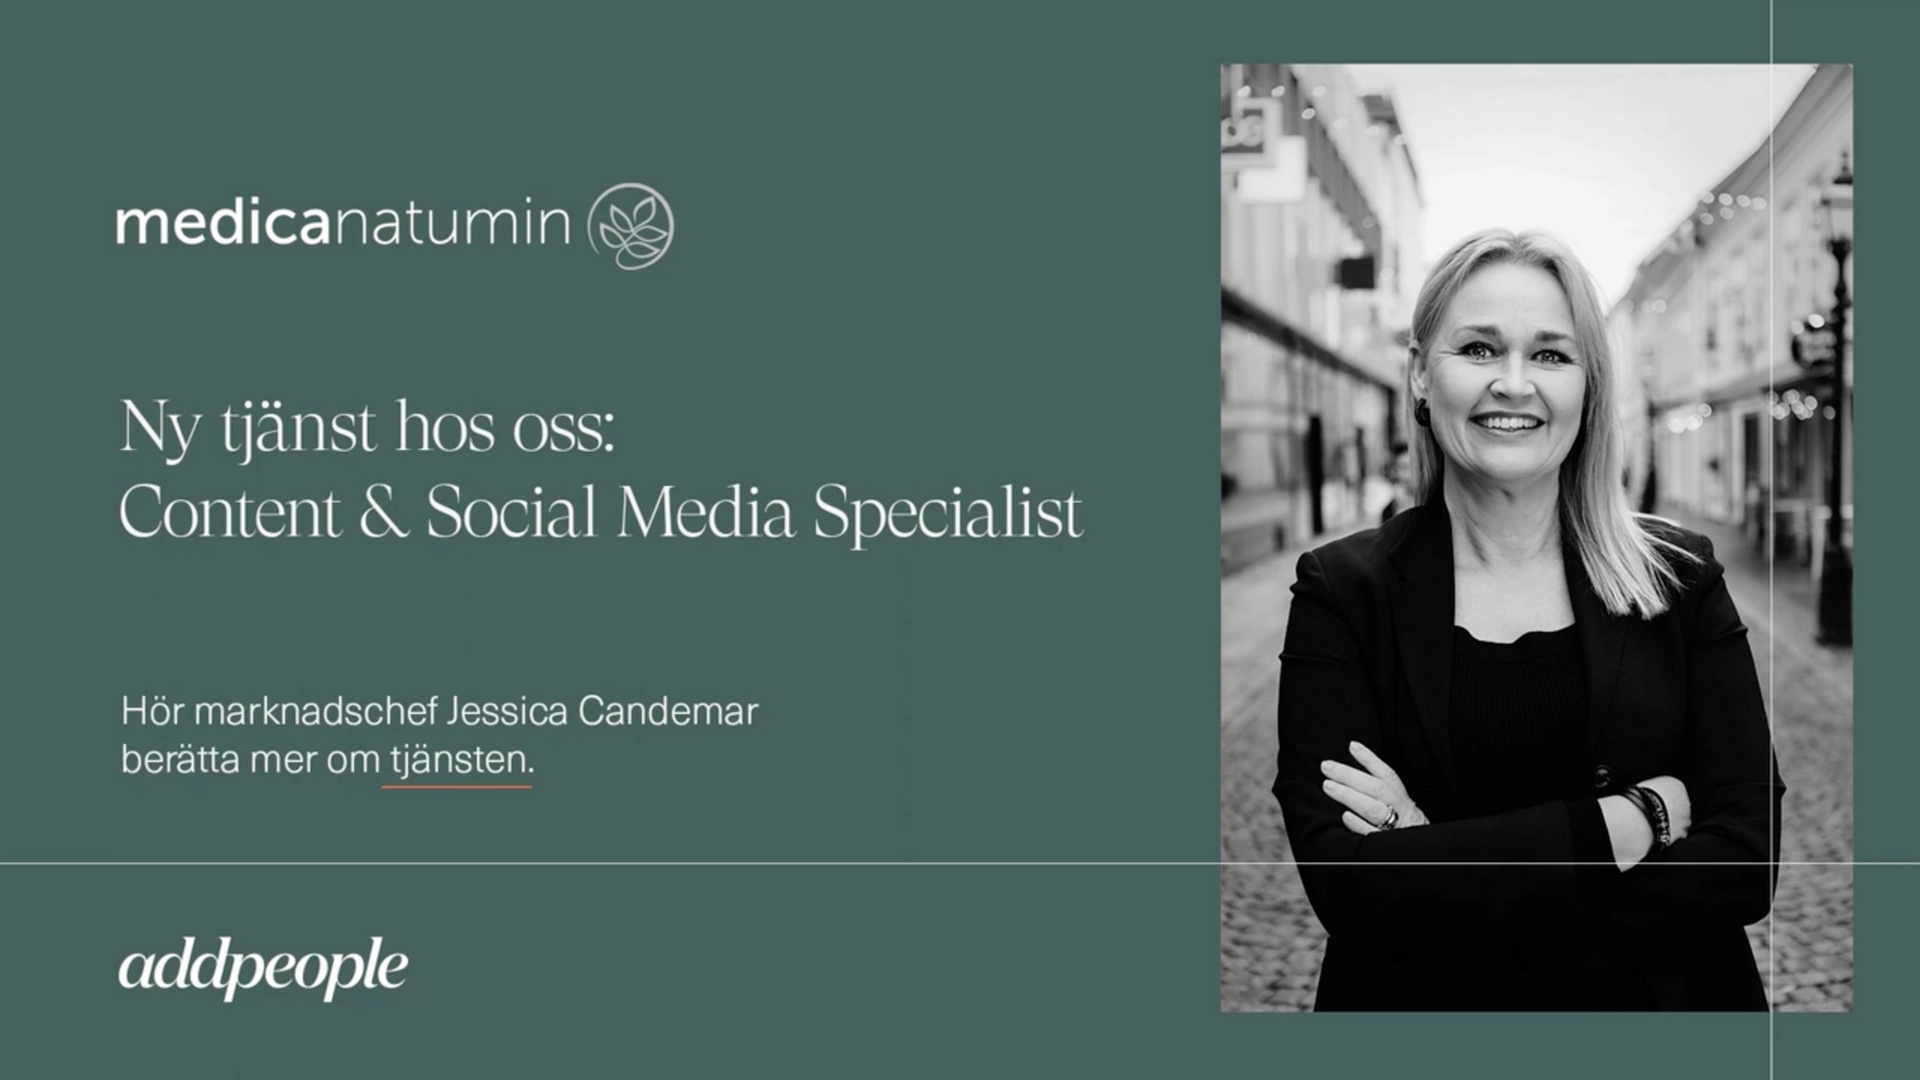 Medicanatumin söker en Content & Social Media Specialist